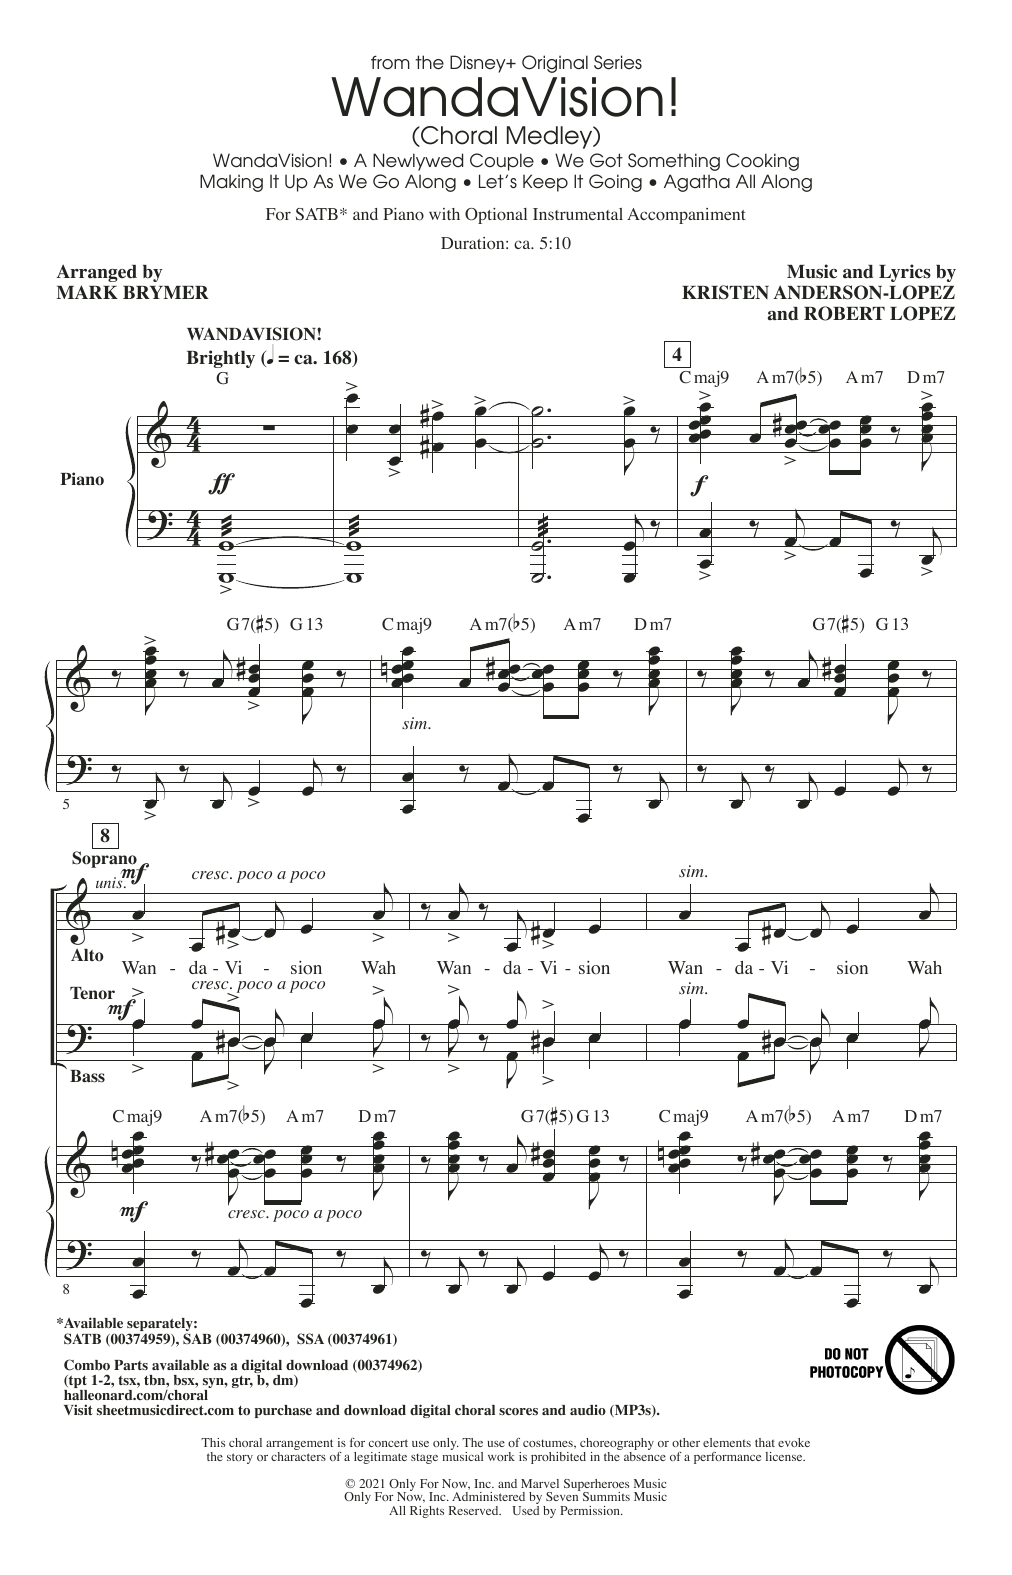 WandaVision! (Choral Medley) (arr. Mark Brymer) (SATB Choir) von Kristen Anderson-Lopez & Robert Lopez